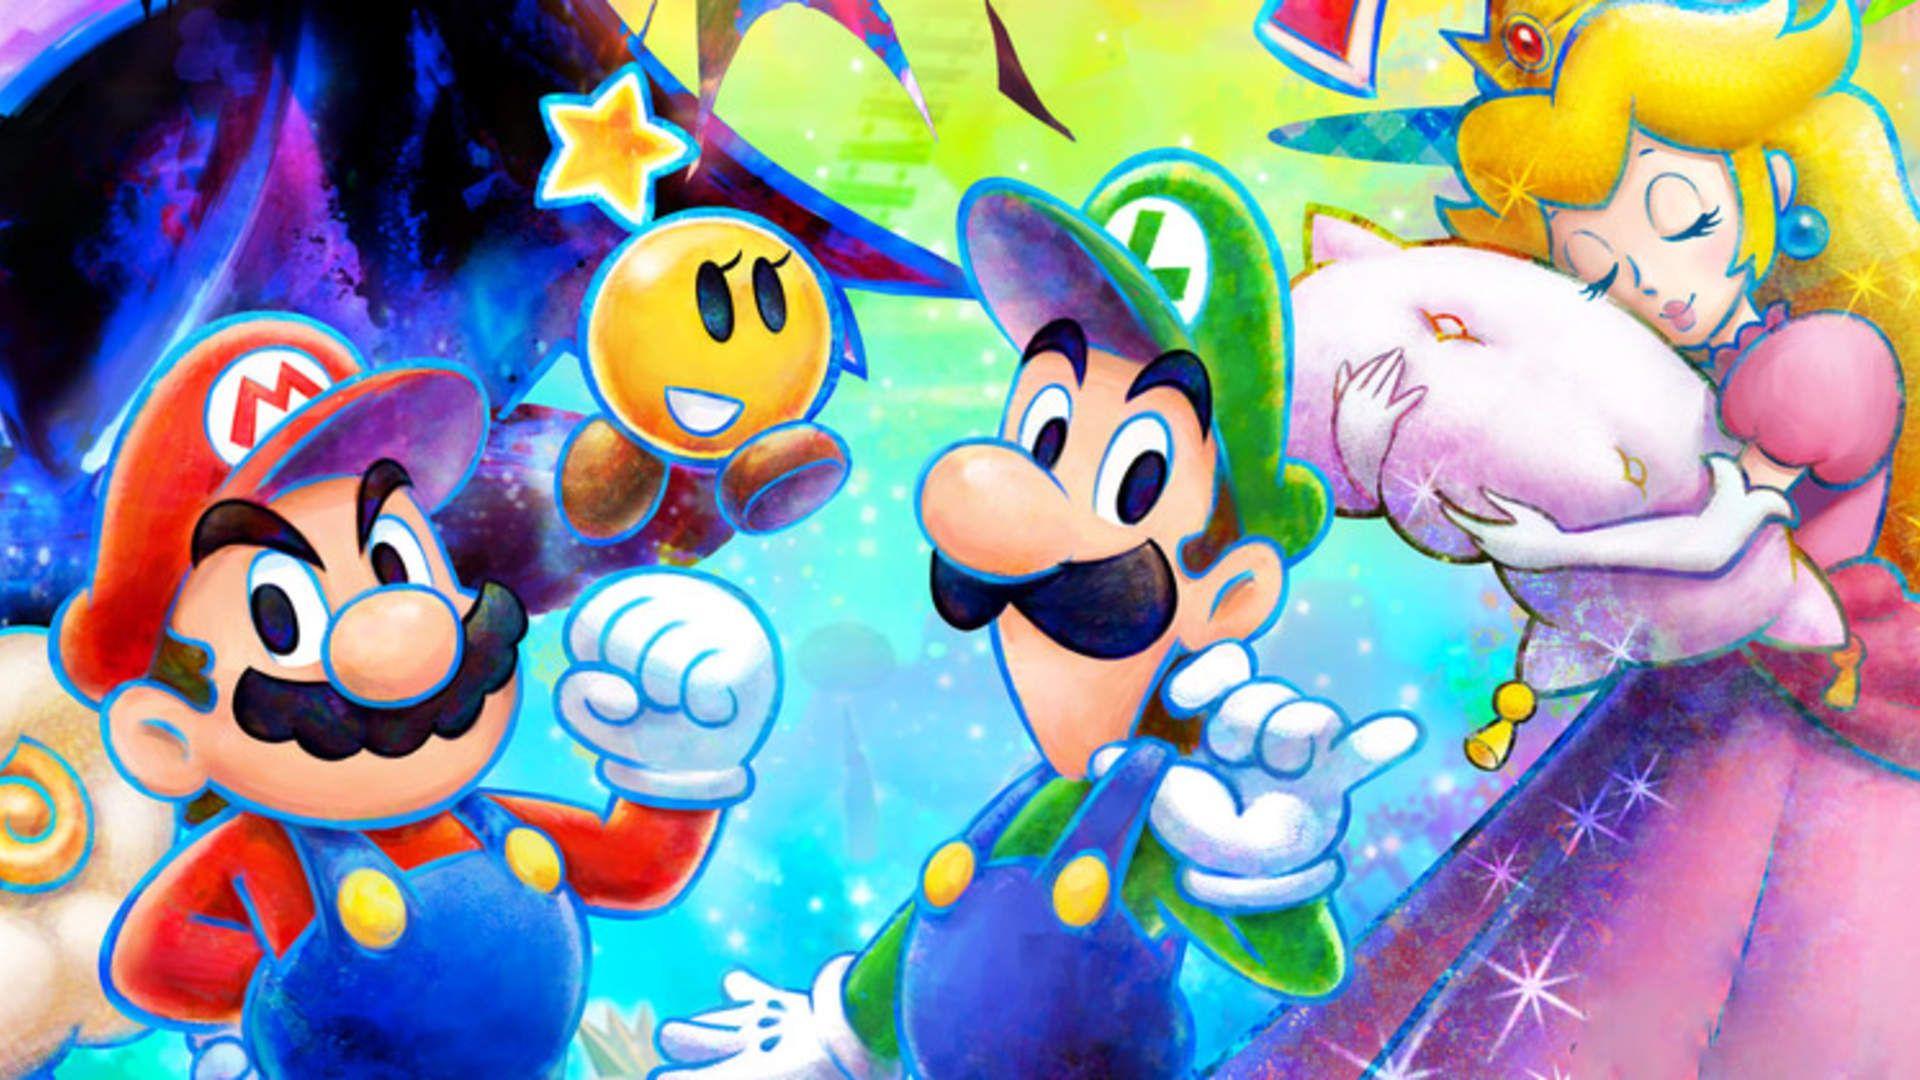 Mario luigi dream. Mario & Luigi: Dream Team Bros.. Mario and Luigi Dream Team. Super Mario RPG. Супер Марио мир.